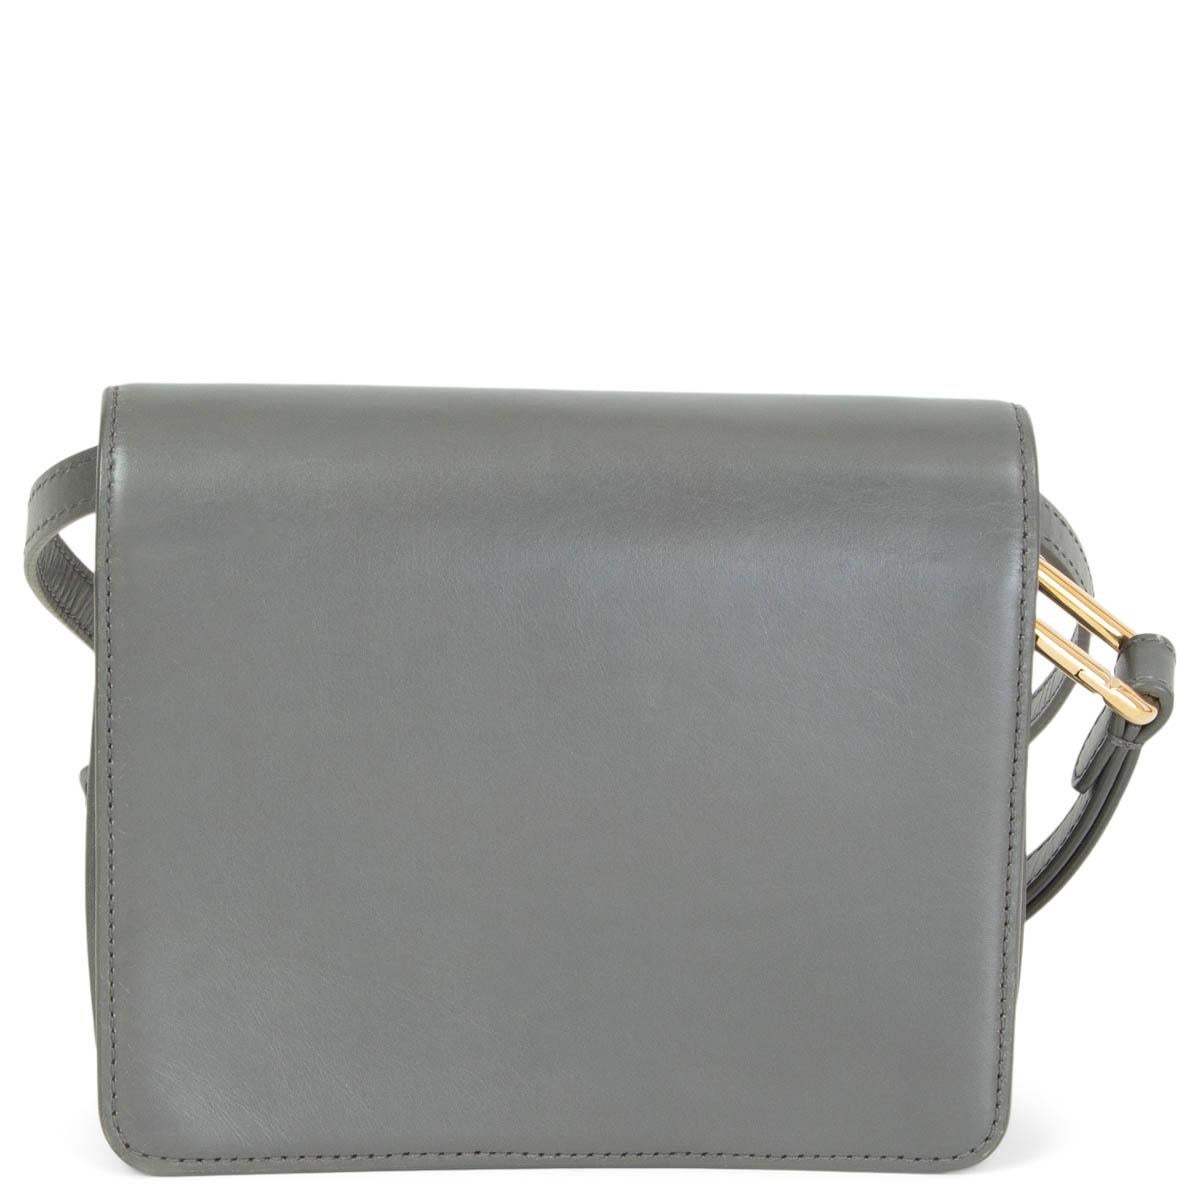 grey leather shoulder bag